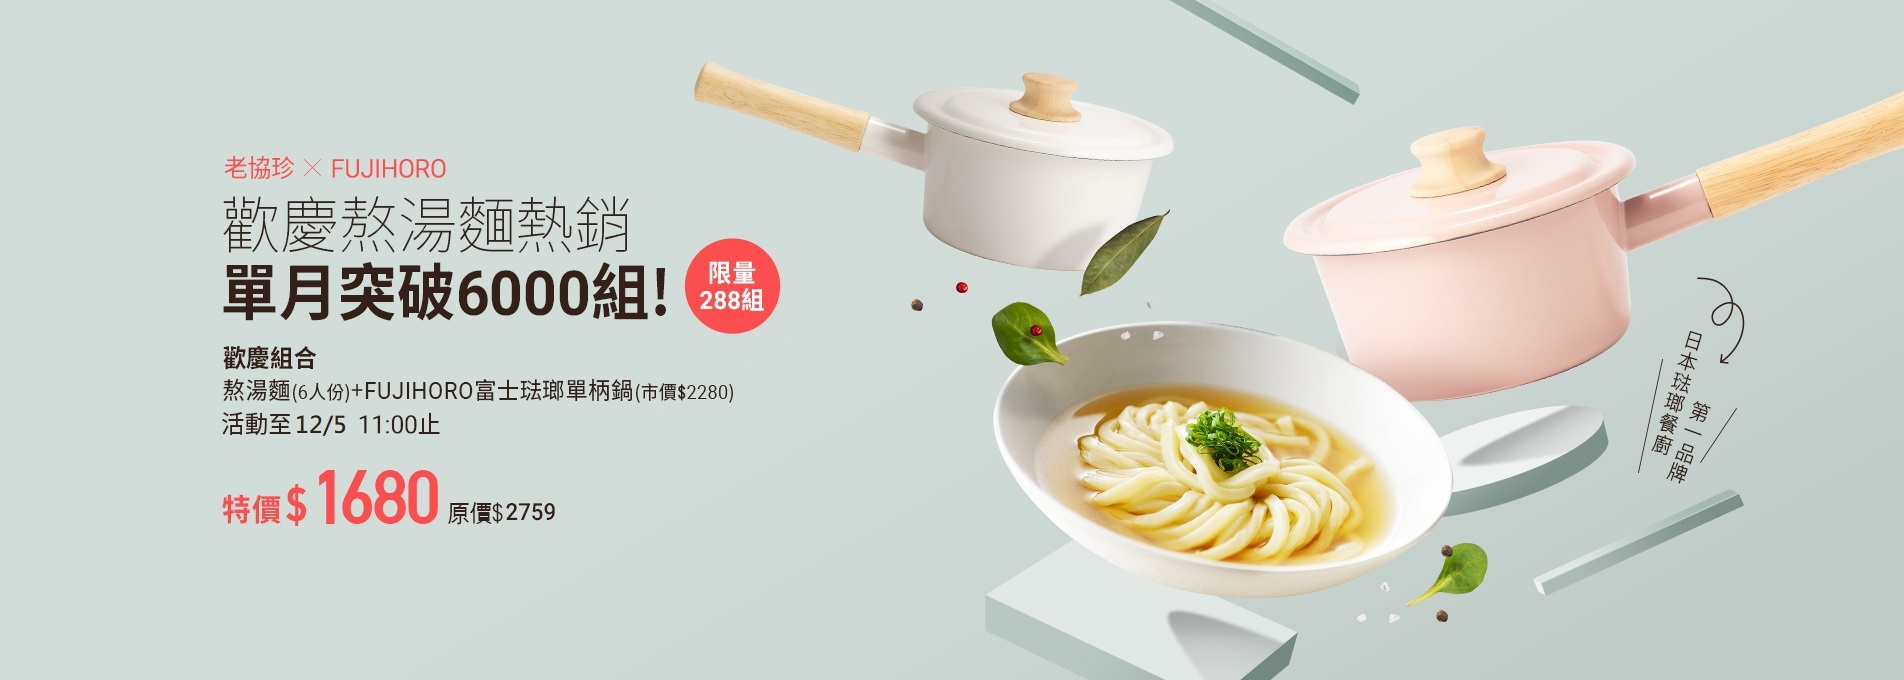 熬湯麵(6人份) +FUJIHORO富士琺瑯單柄鍋